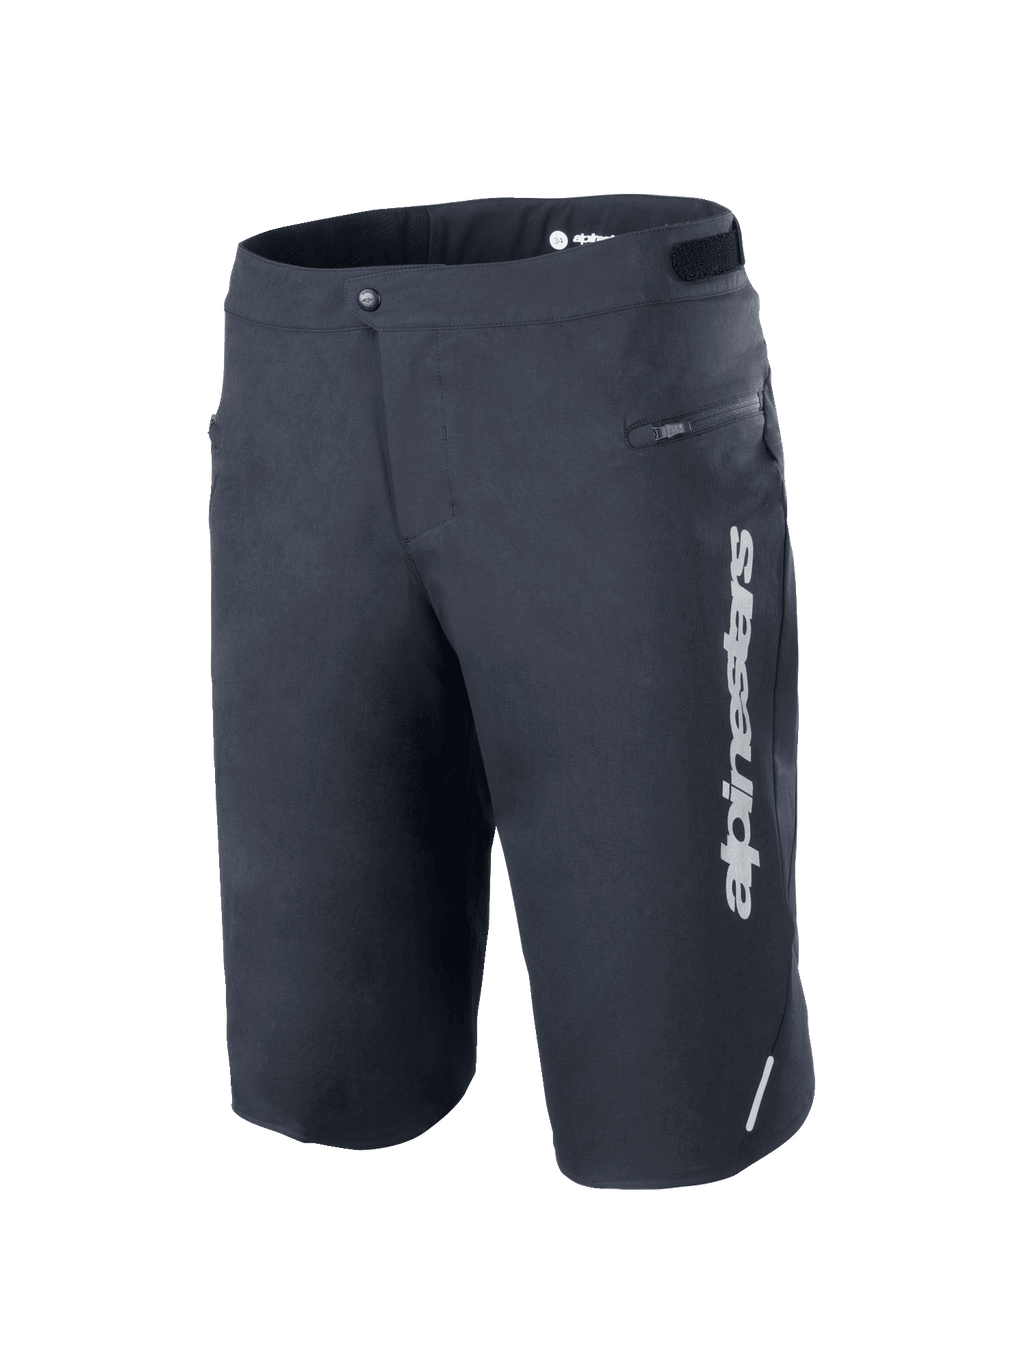 MTB Shorts | Alpinestars® Official Site